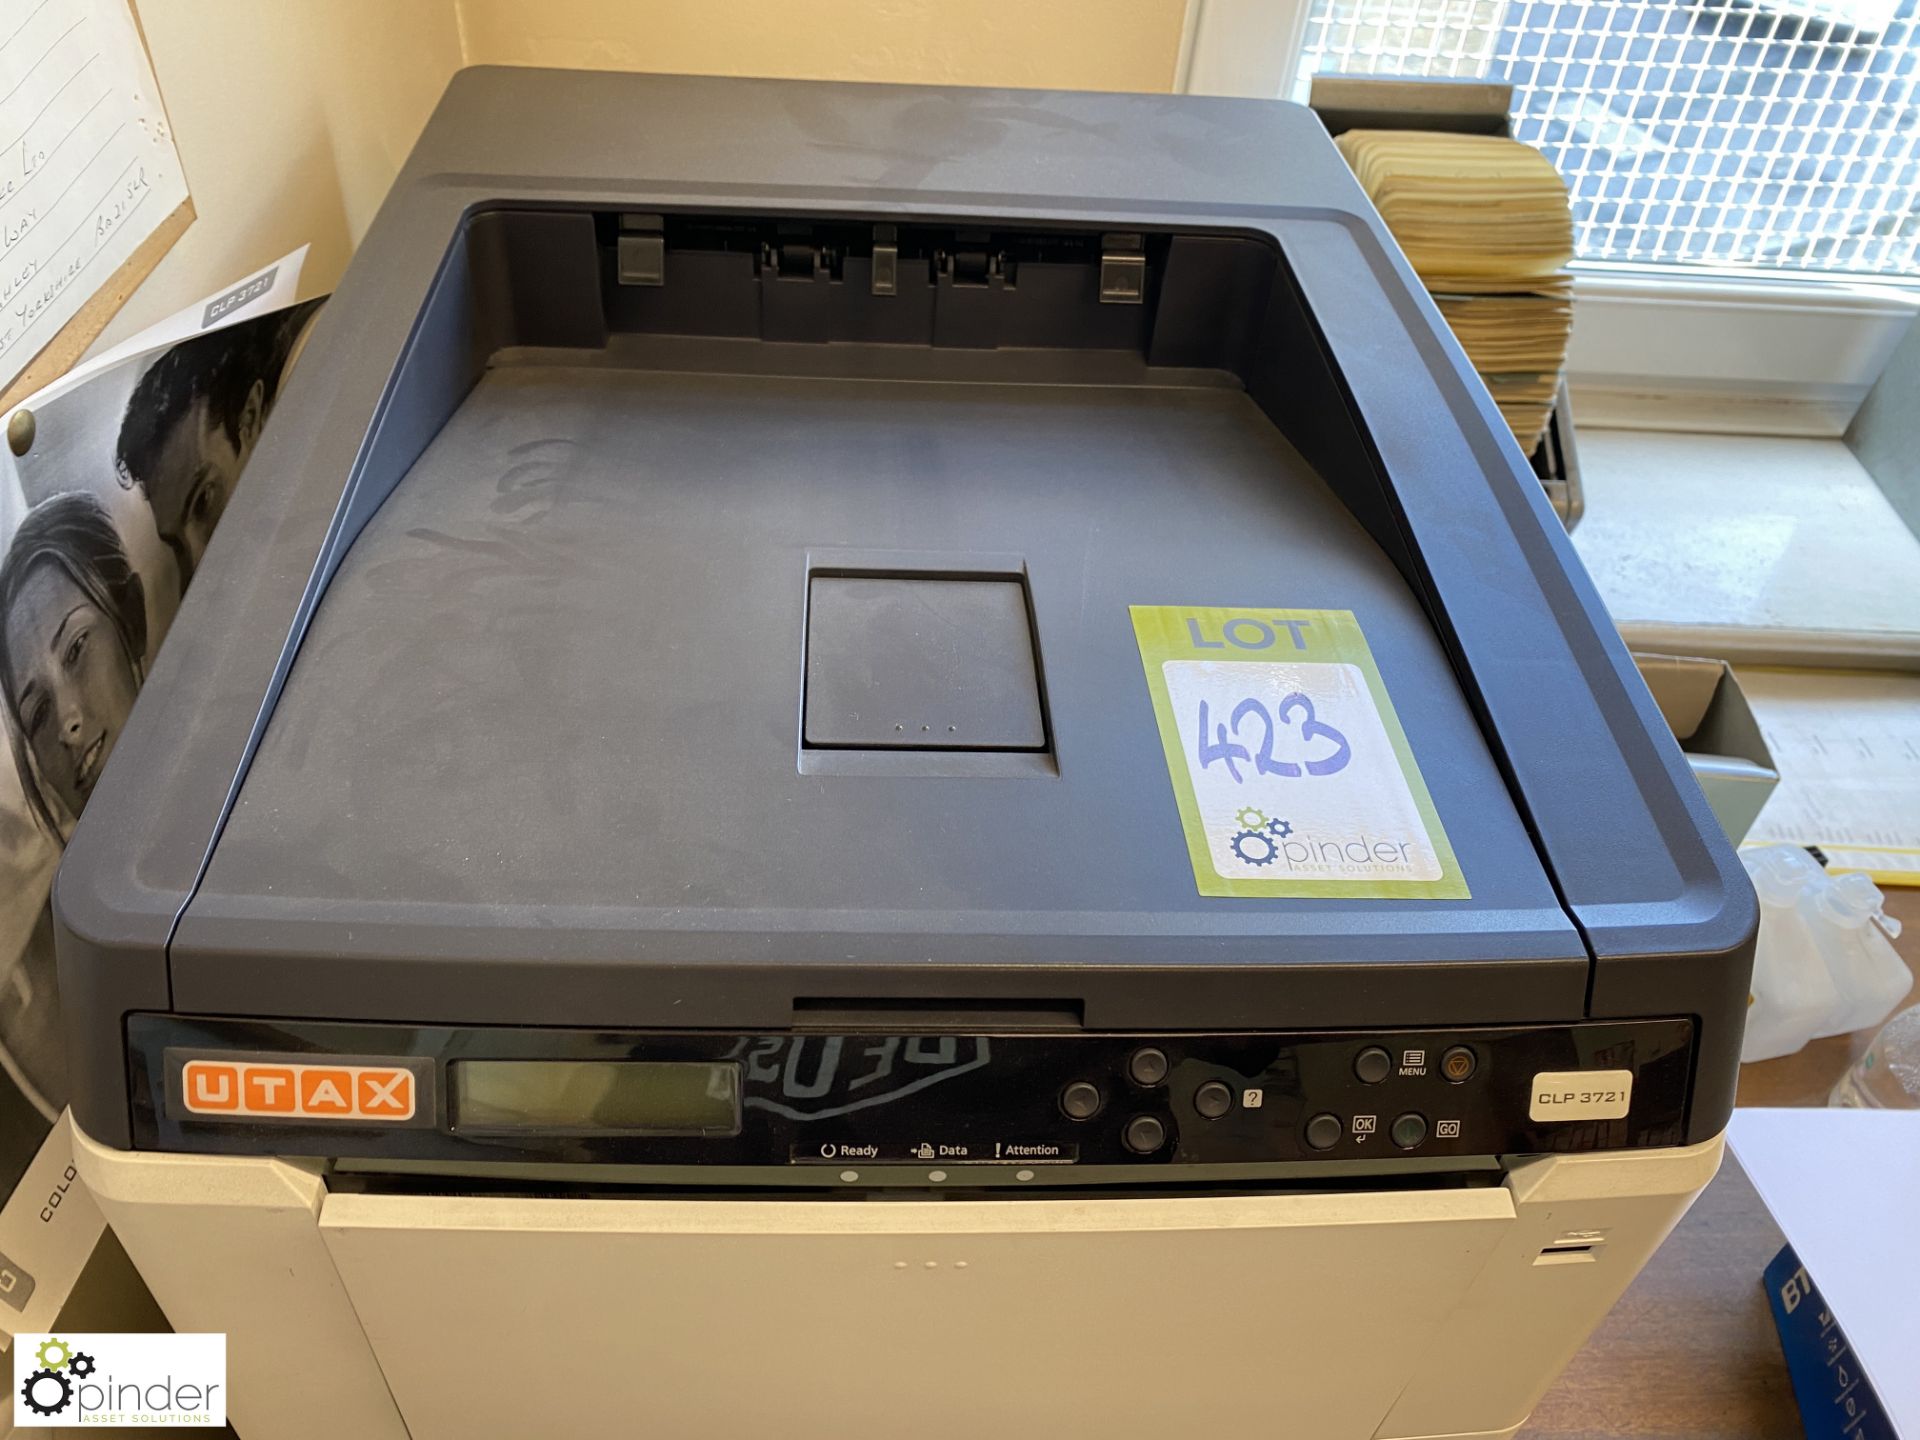 Utax CLP3721 Laser Printer - Image 2 of 4